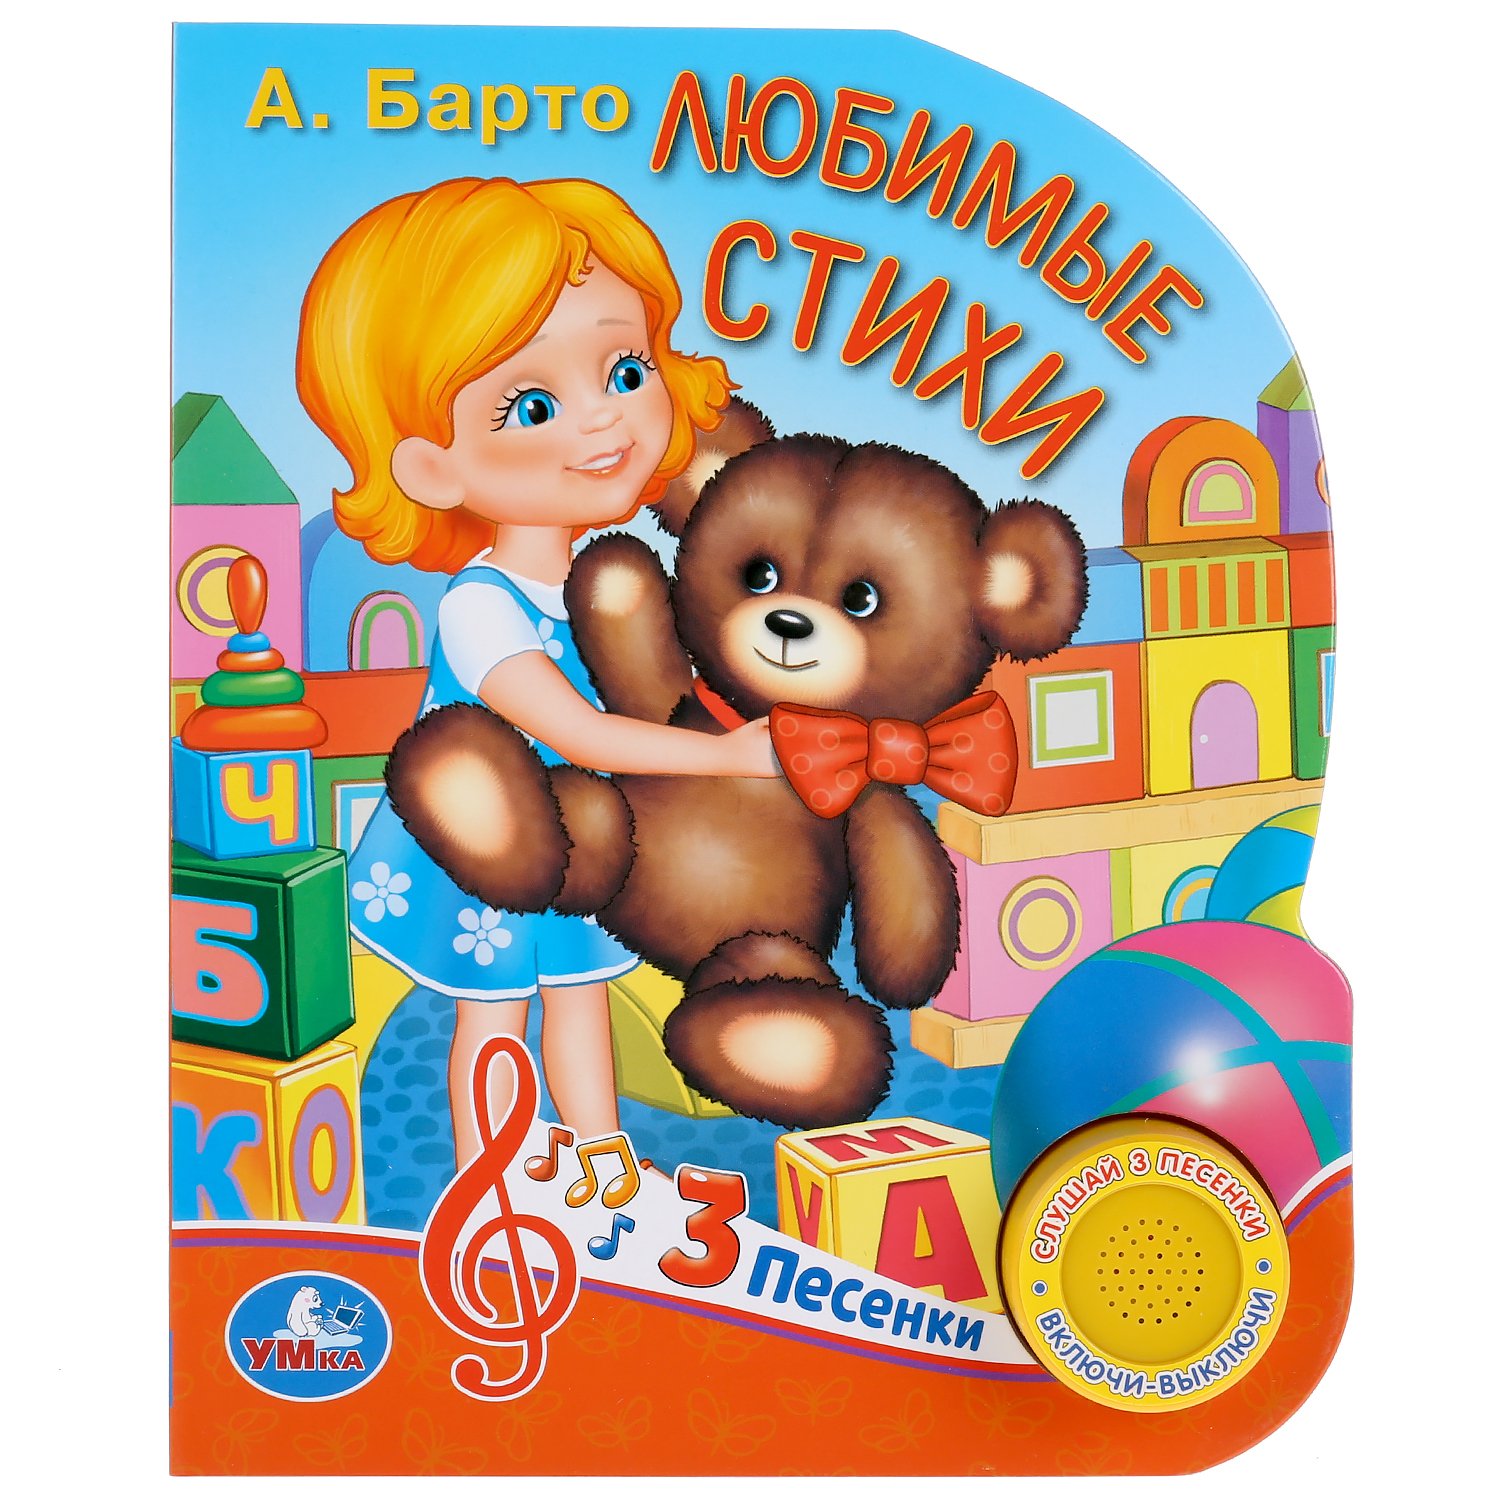 Книги про игрушки. "Умка". Игрушки. А. Барто (1 кнопка с 10 песенками).. Детские книжки. Барто книги для детей. Книжки игрушки для детей.